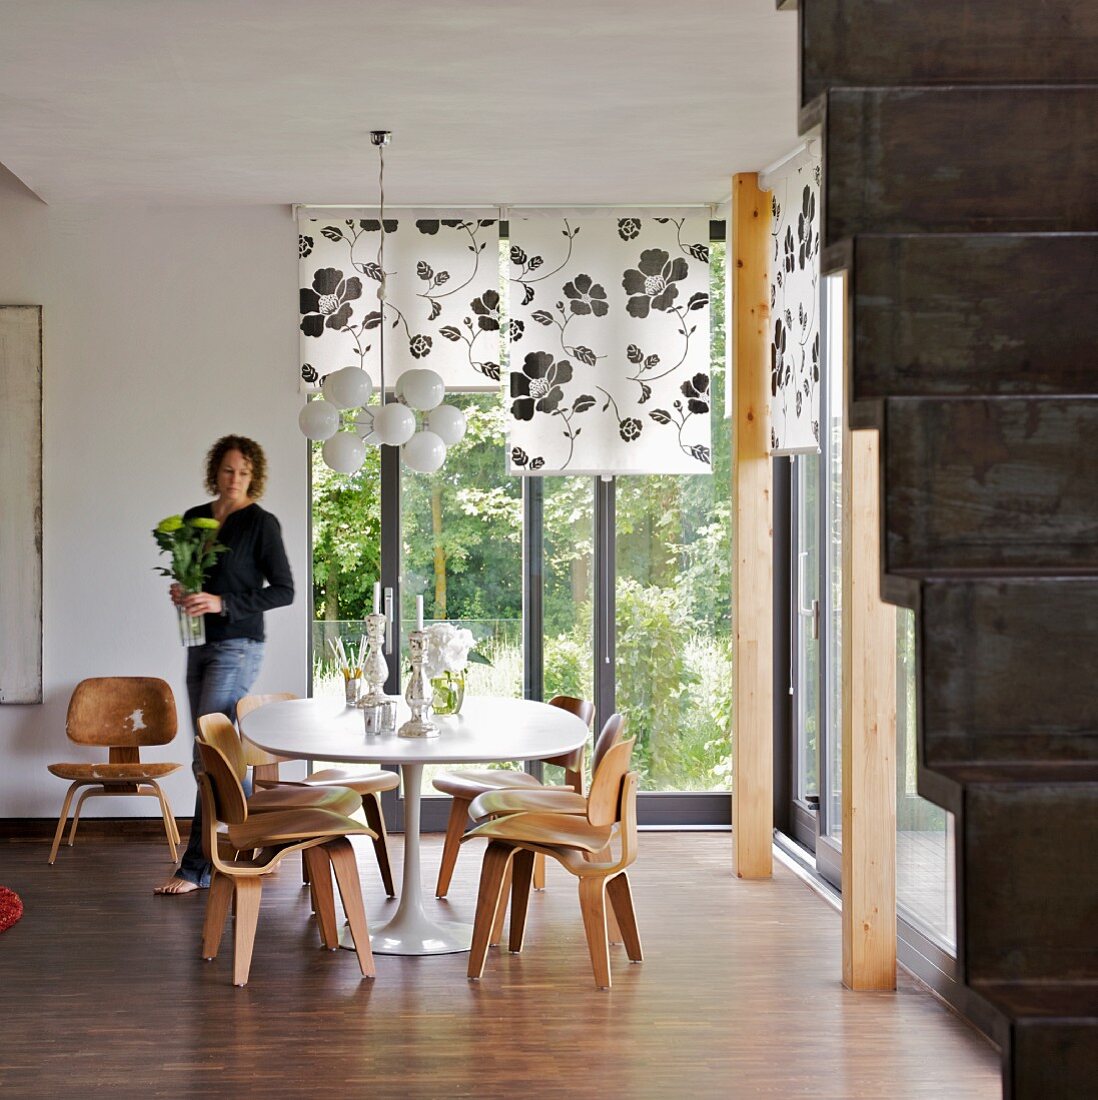 Sitzplatz mit Holzstühlen im 50er Jahre Stil in Zimmerecke mit Gartenblick und eine Frau mit Blumenvase in den Händen